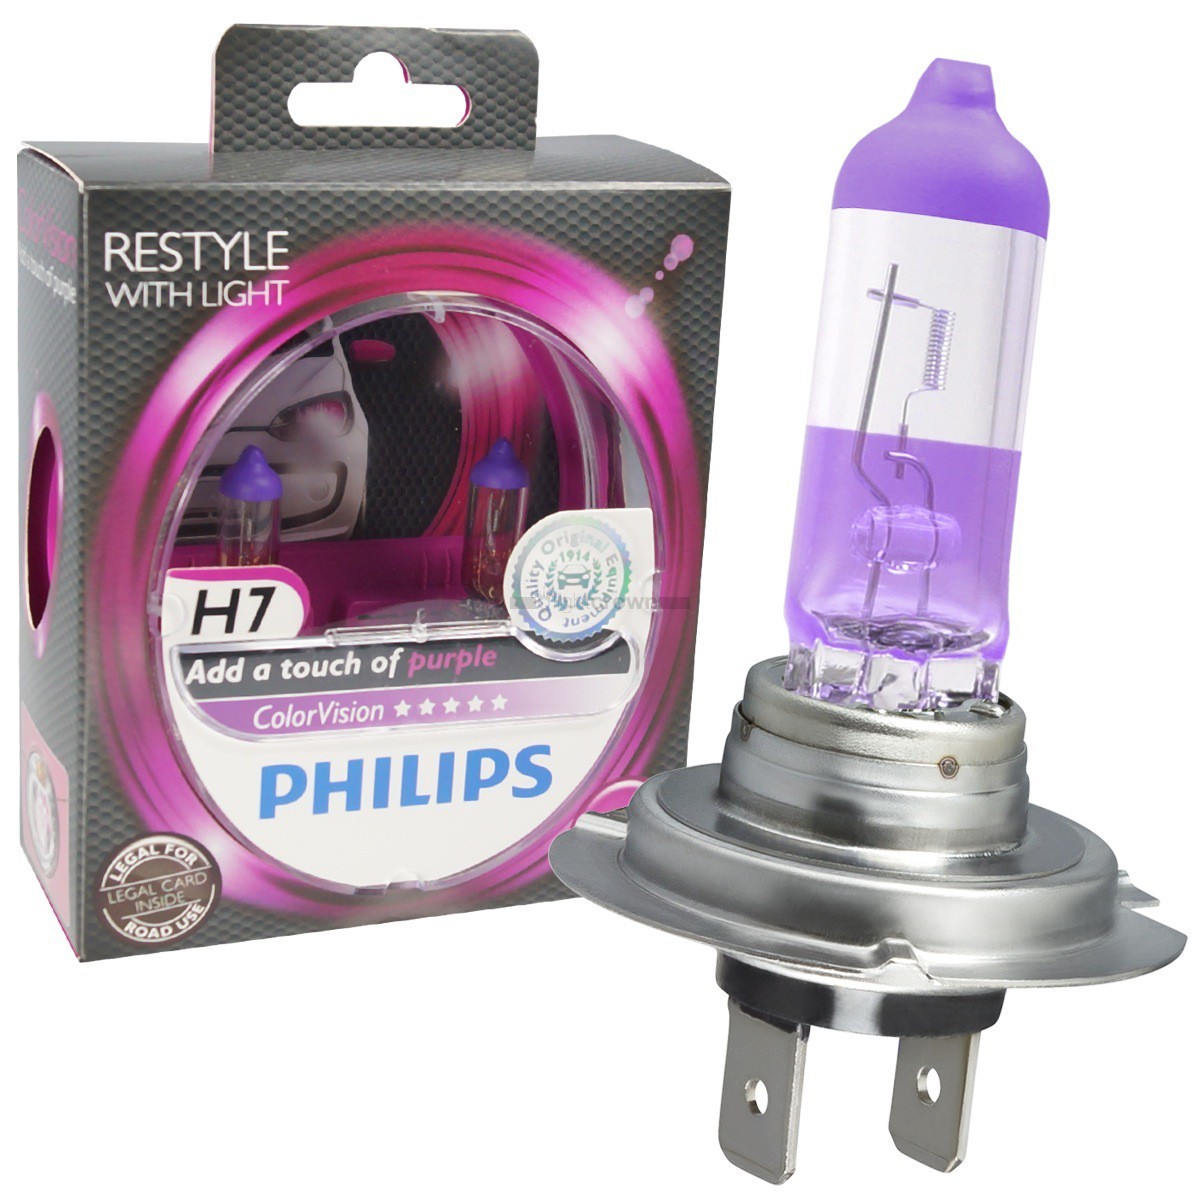 Philips h7 купить. Филипс лампы автомобильные h7. Галогеновые лампы Филипс h7. Лампы h7 Philips COLORVISION. Лампа галогеновая h4 COLORVISION.